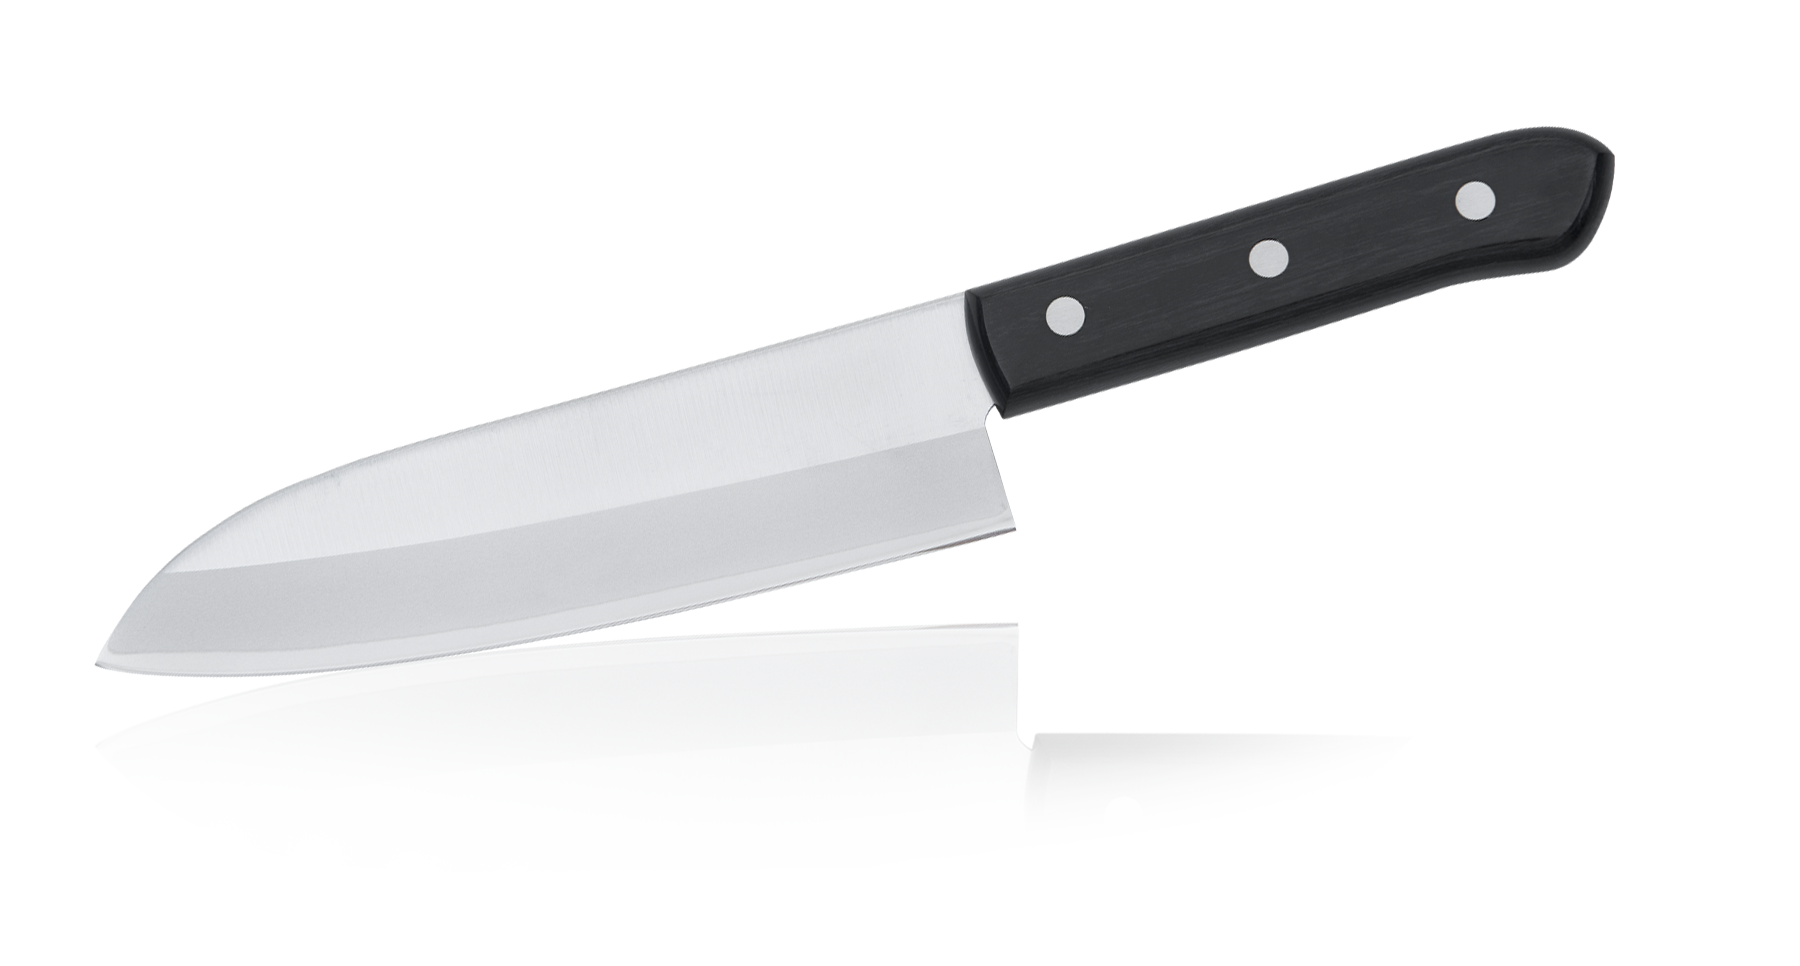 Tojiro Coltelli giapponesi per cucina Western Knife – Acciaio al Carbonio VG10 3 strati – Lama Ultra Affilata – Manico Eco Legno – Originali giapponesi Santoku 170 mm (F-311)